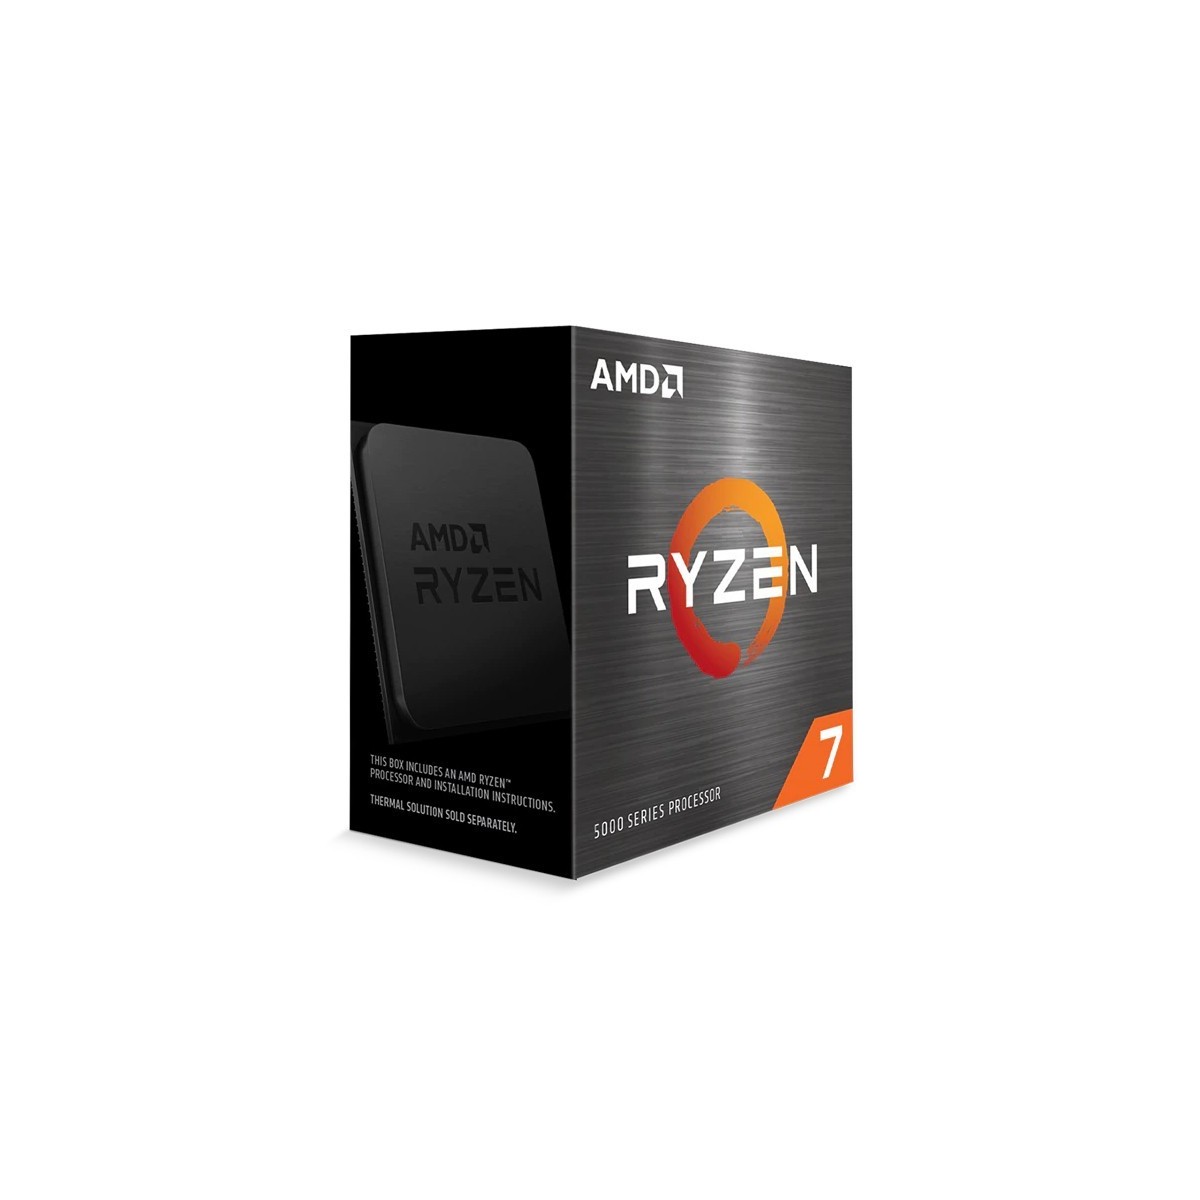 AMD Ryzen 7 5800X - AMD Ryzen 7 - Socket AM4 - PC - 7 nm - AMD - 3.8 GHz